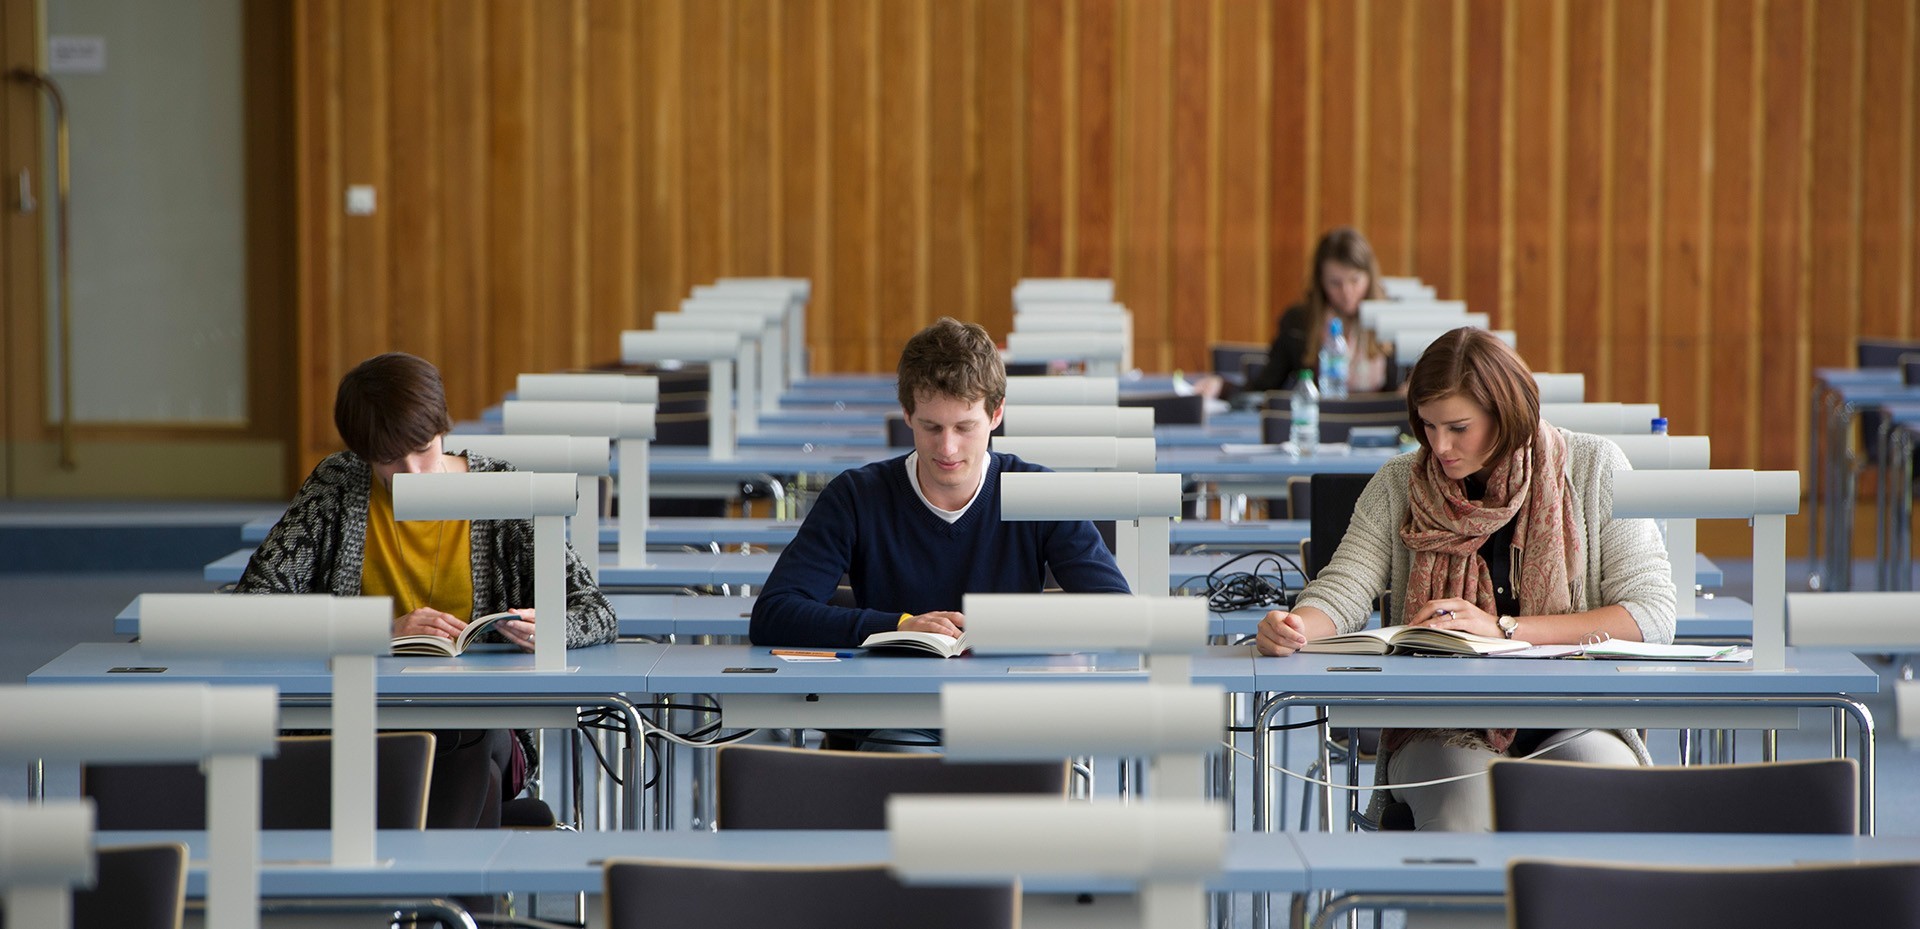 Studierende sitzen an Arbeitsplätzen in der Bibliothek